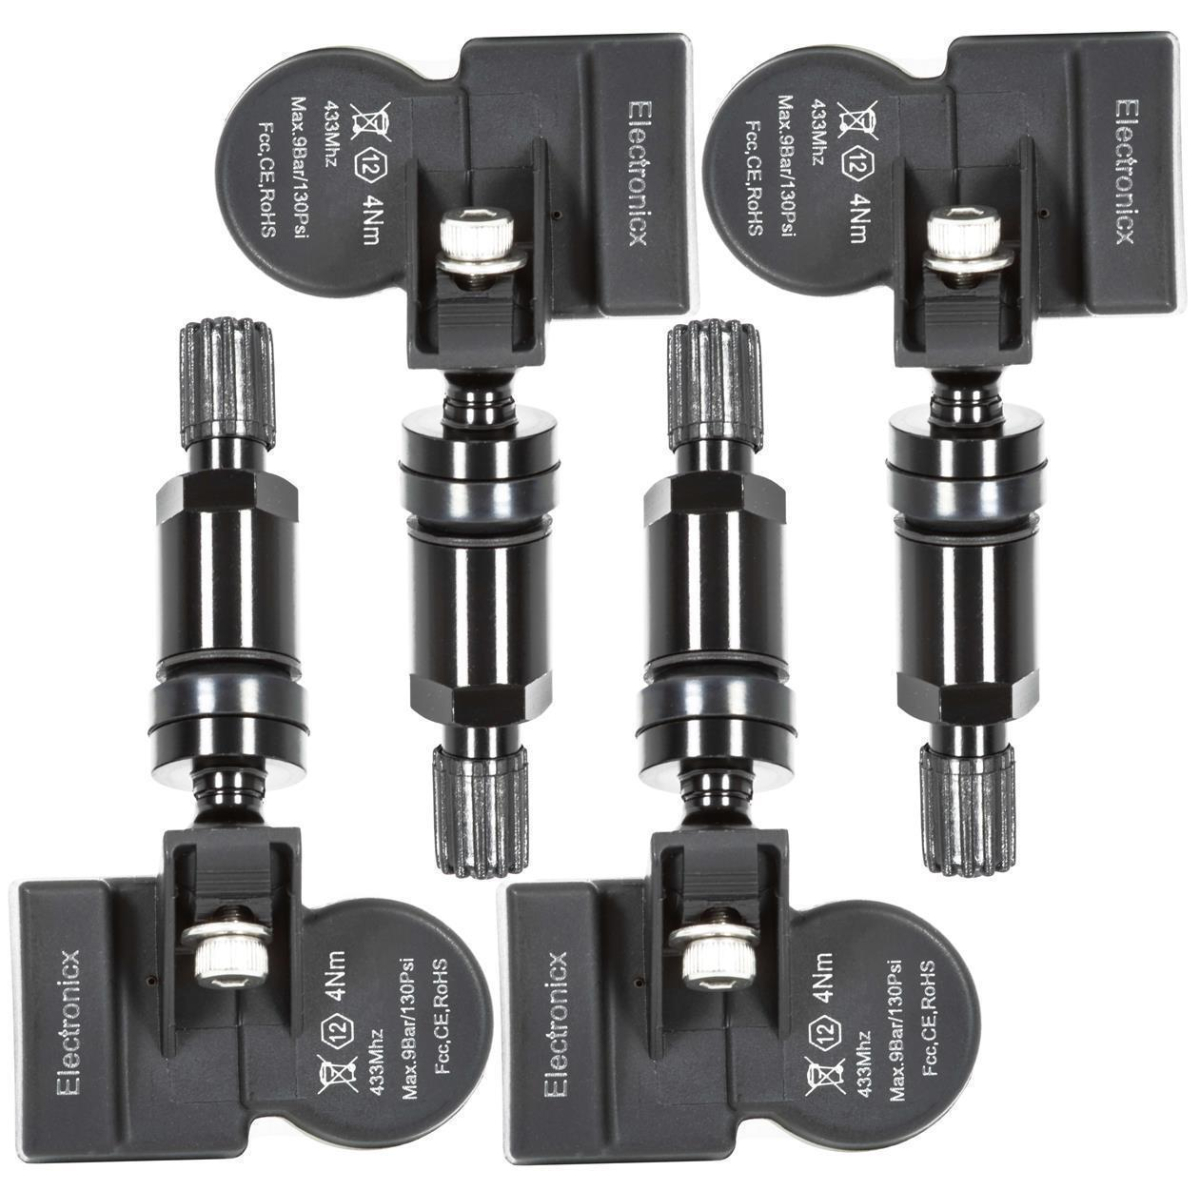 4x TPMS tire pressure sensors metal valve black for Wuling S3 Baojun 310 510 610 730 23984663